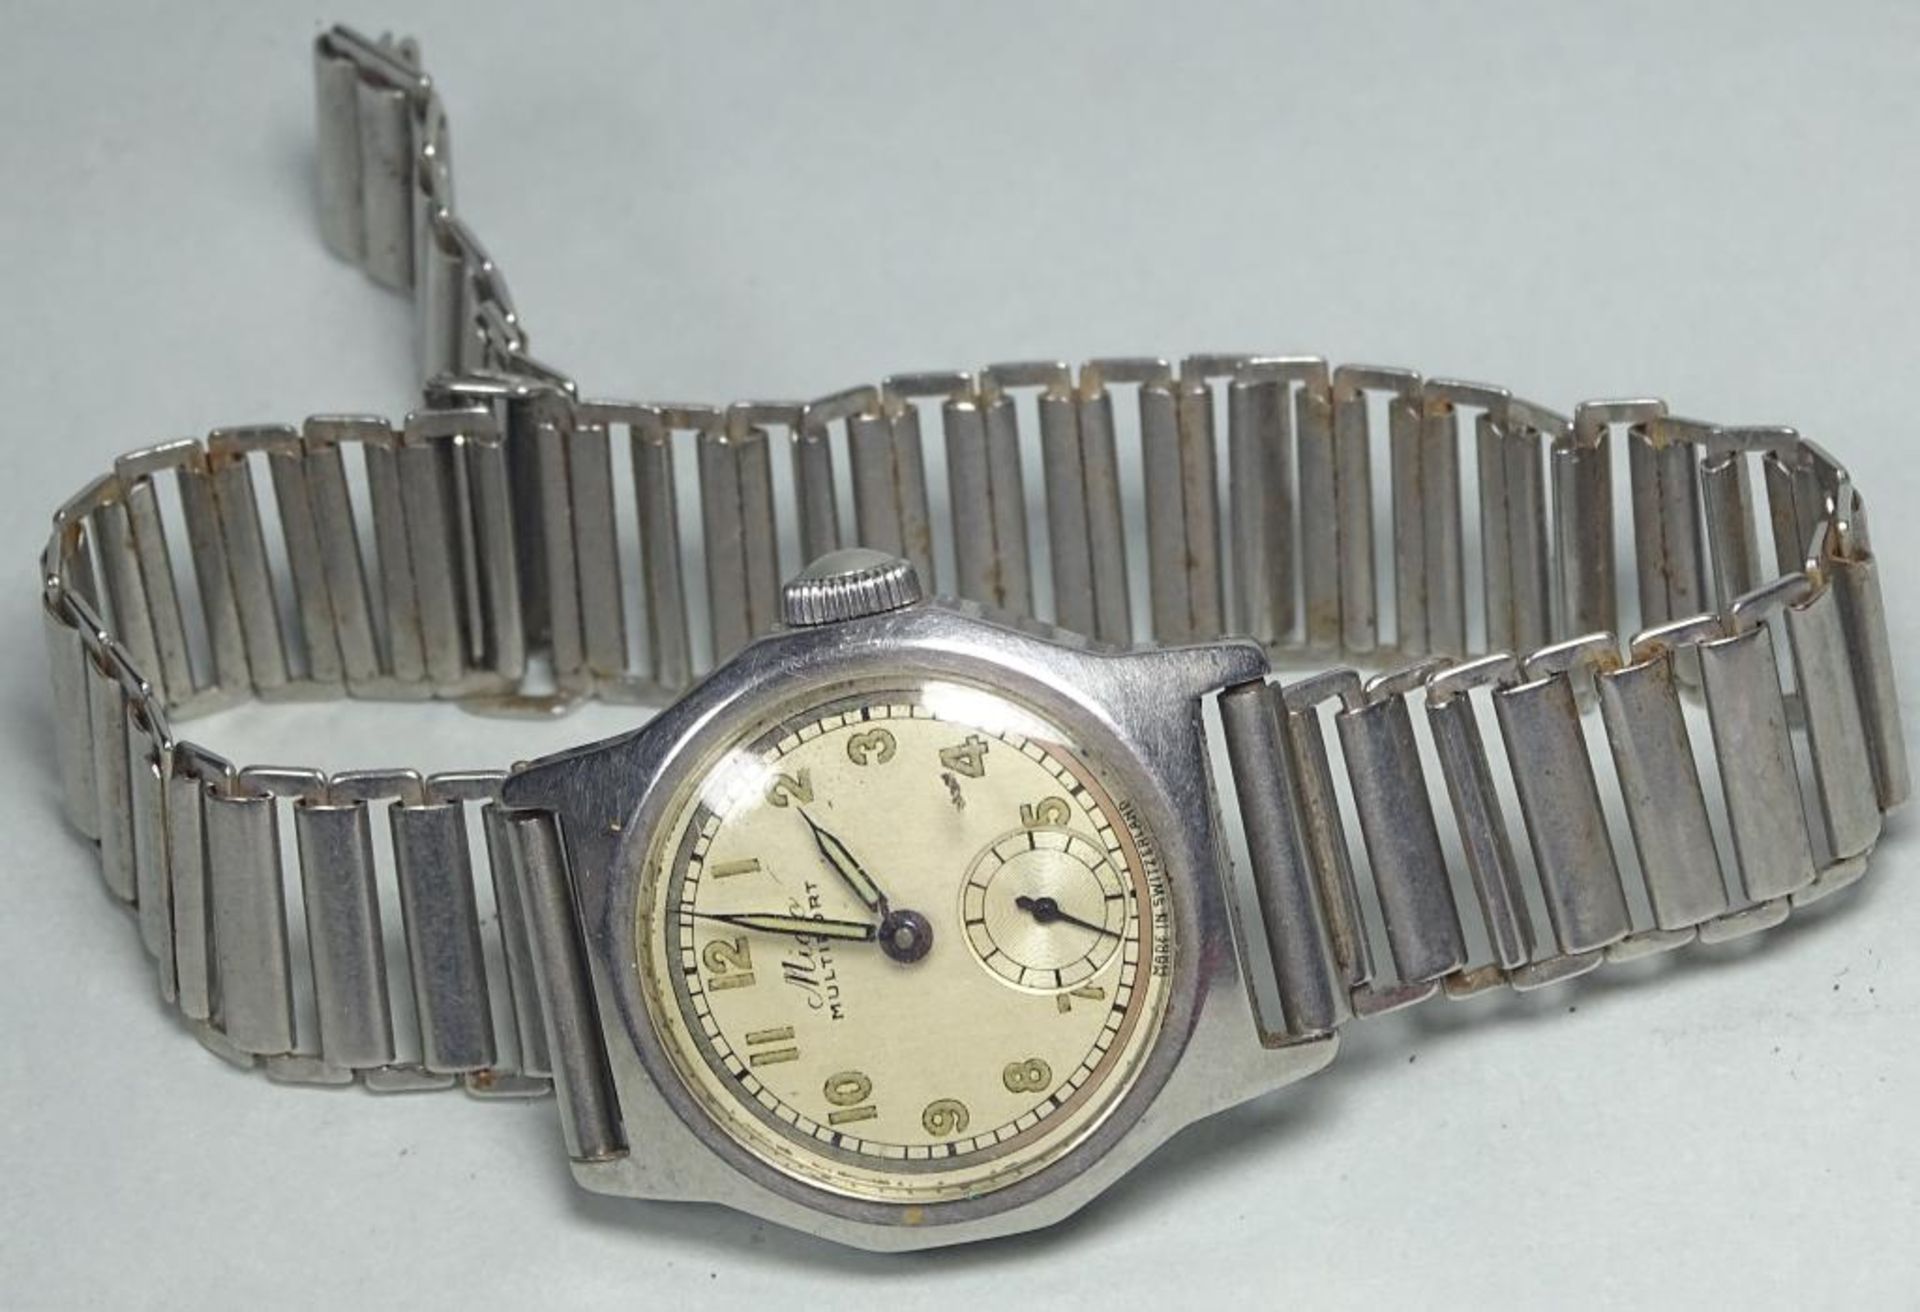 Armbanduhr "Mido",Multifort,vintage,Handaufzug,Werk läuft,Edelstahl,Tragespuren,d-29m - Bild 2 aus 3